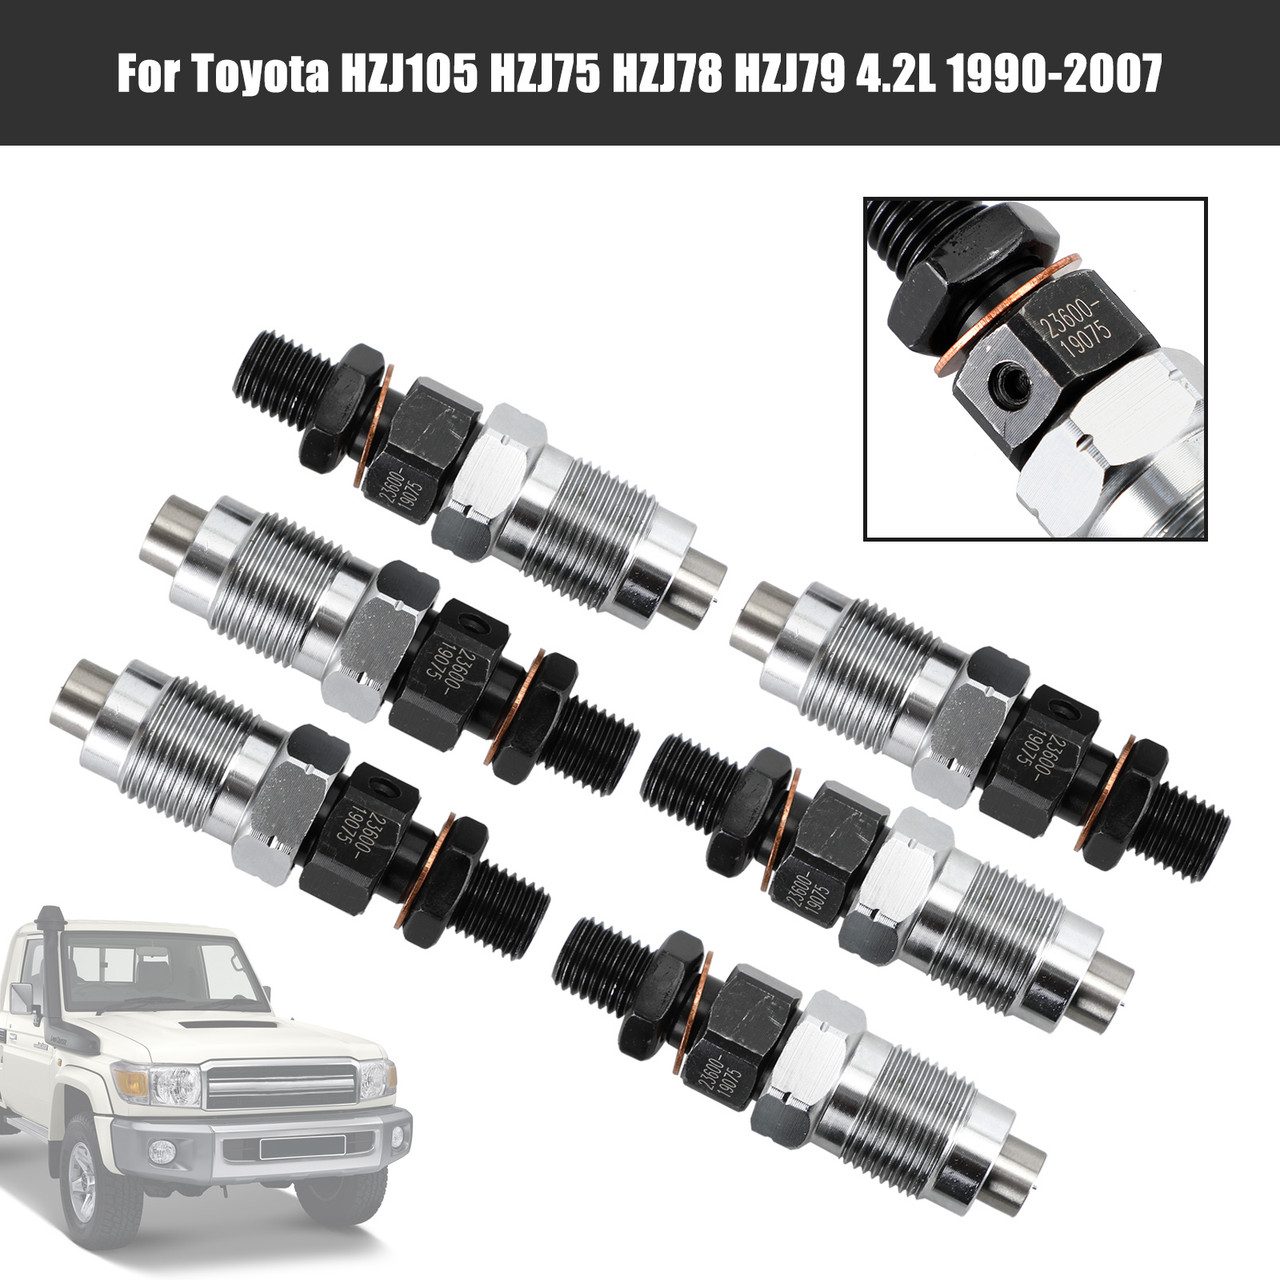 6PCS Fuel Injectors 23600-19075 Fit Toyota HZJ105 HZJ75 HZJ78 HZJ79 1990-2007